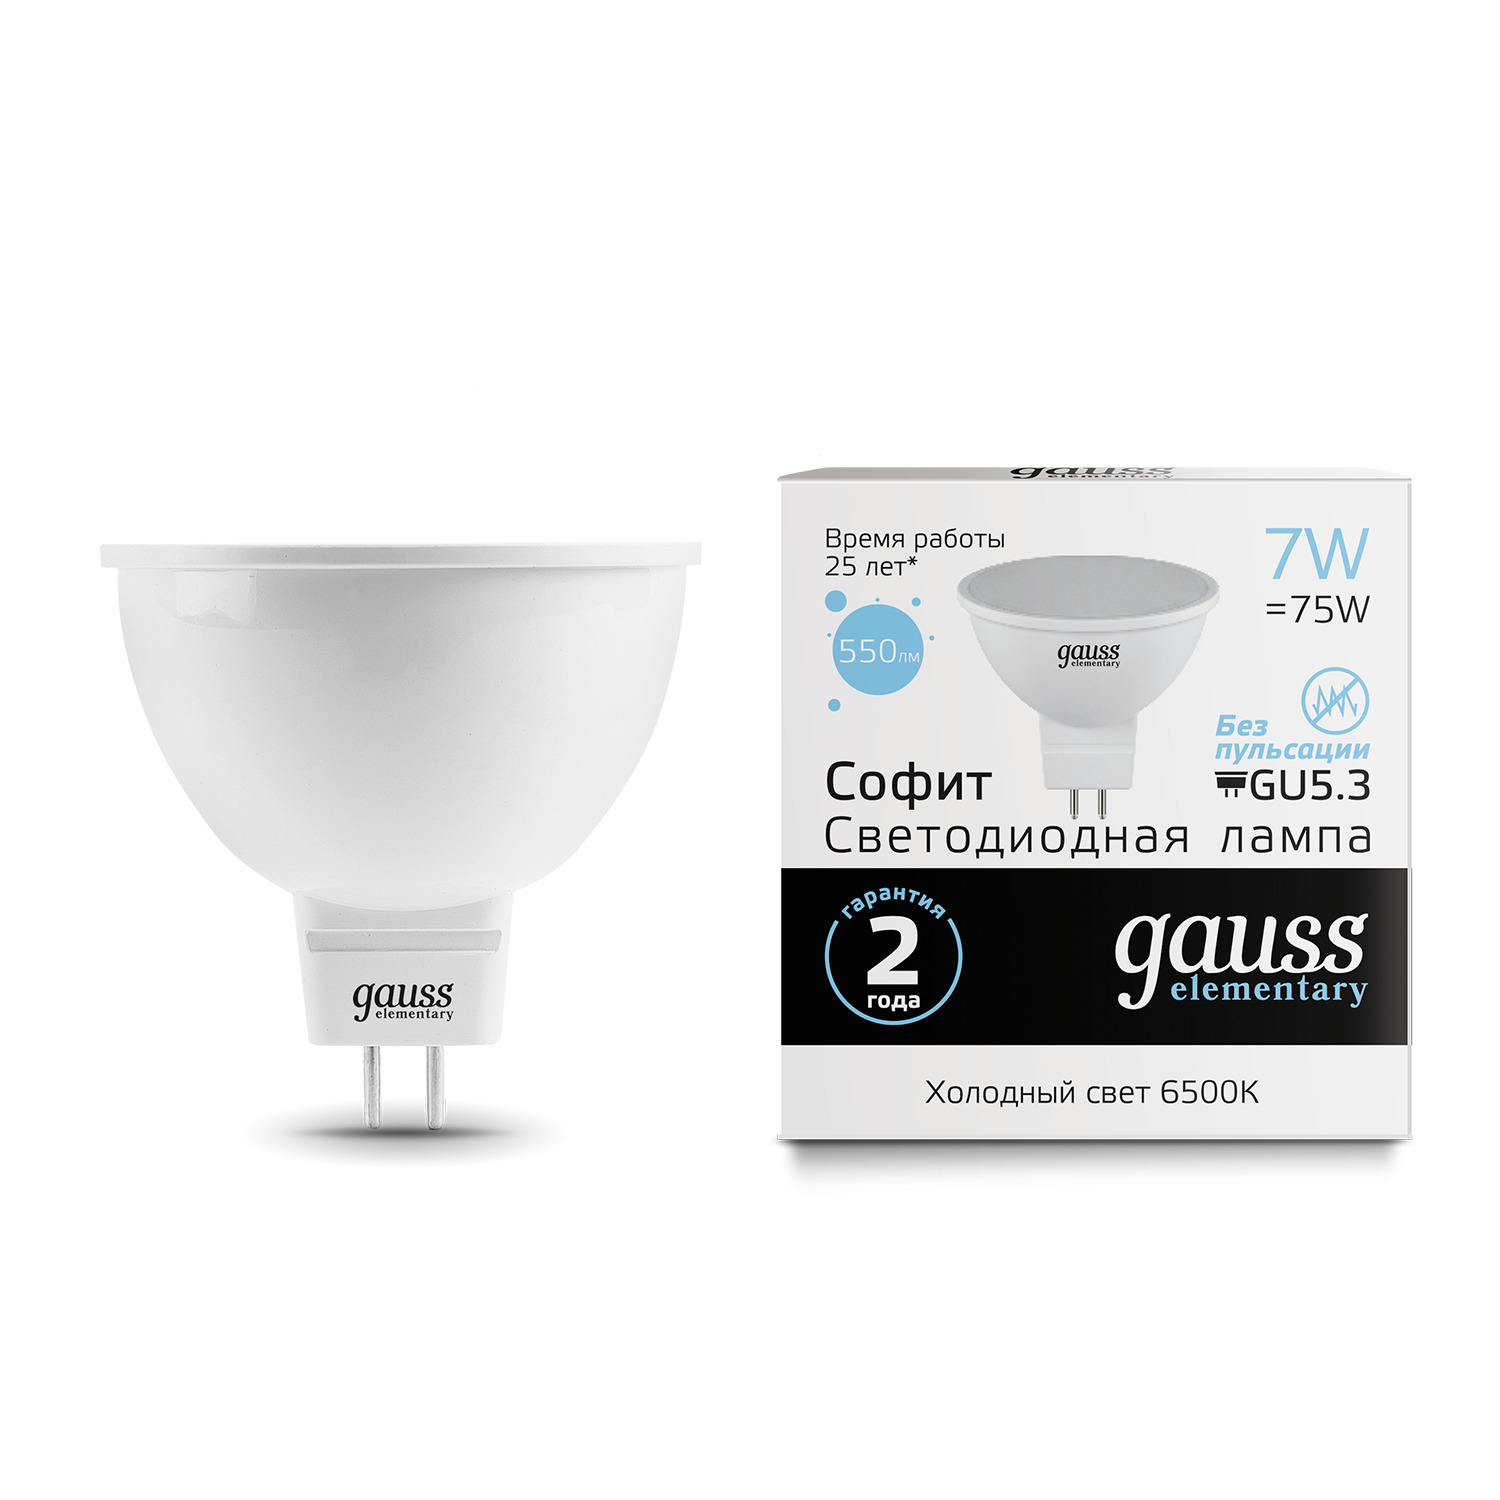 Лампа Gauss LED Elementary MR16 GU5.3 7W 6500K gauss led elementary mr16 gu5 3 9w 6500k 1 10 100